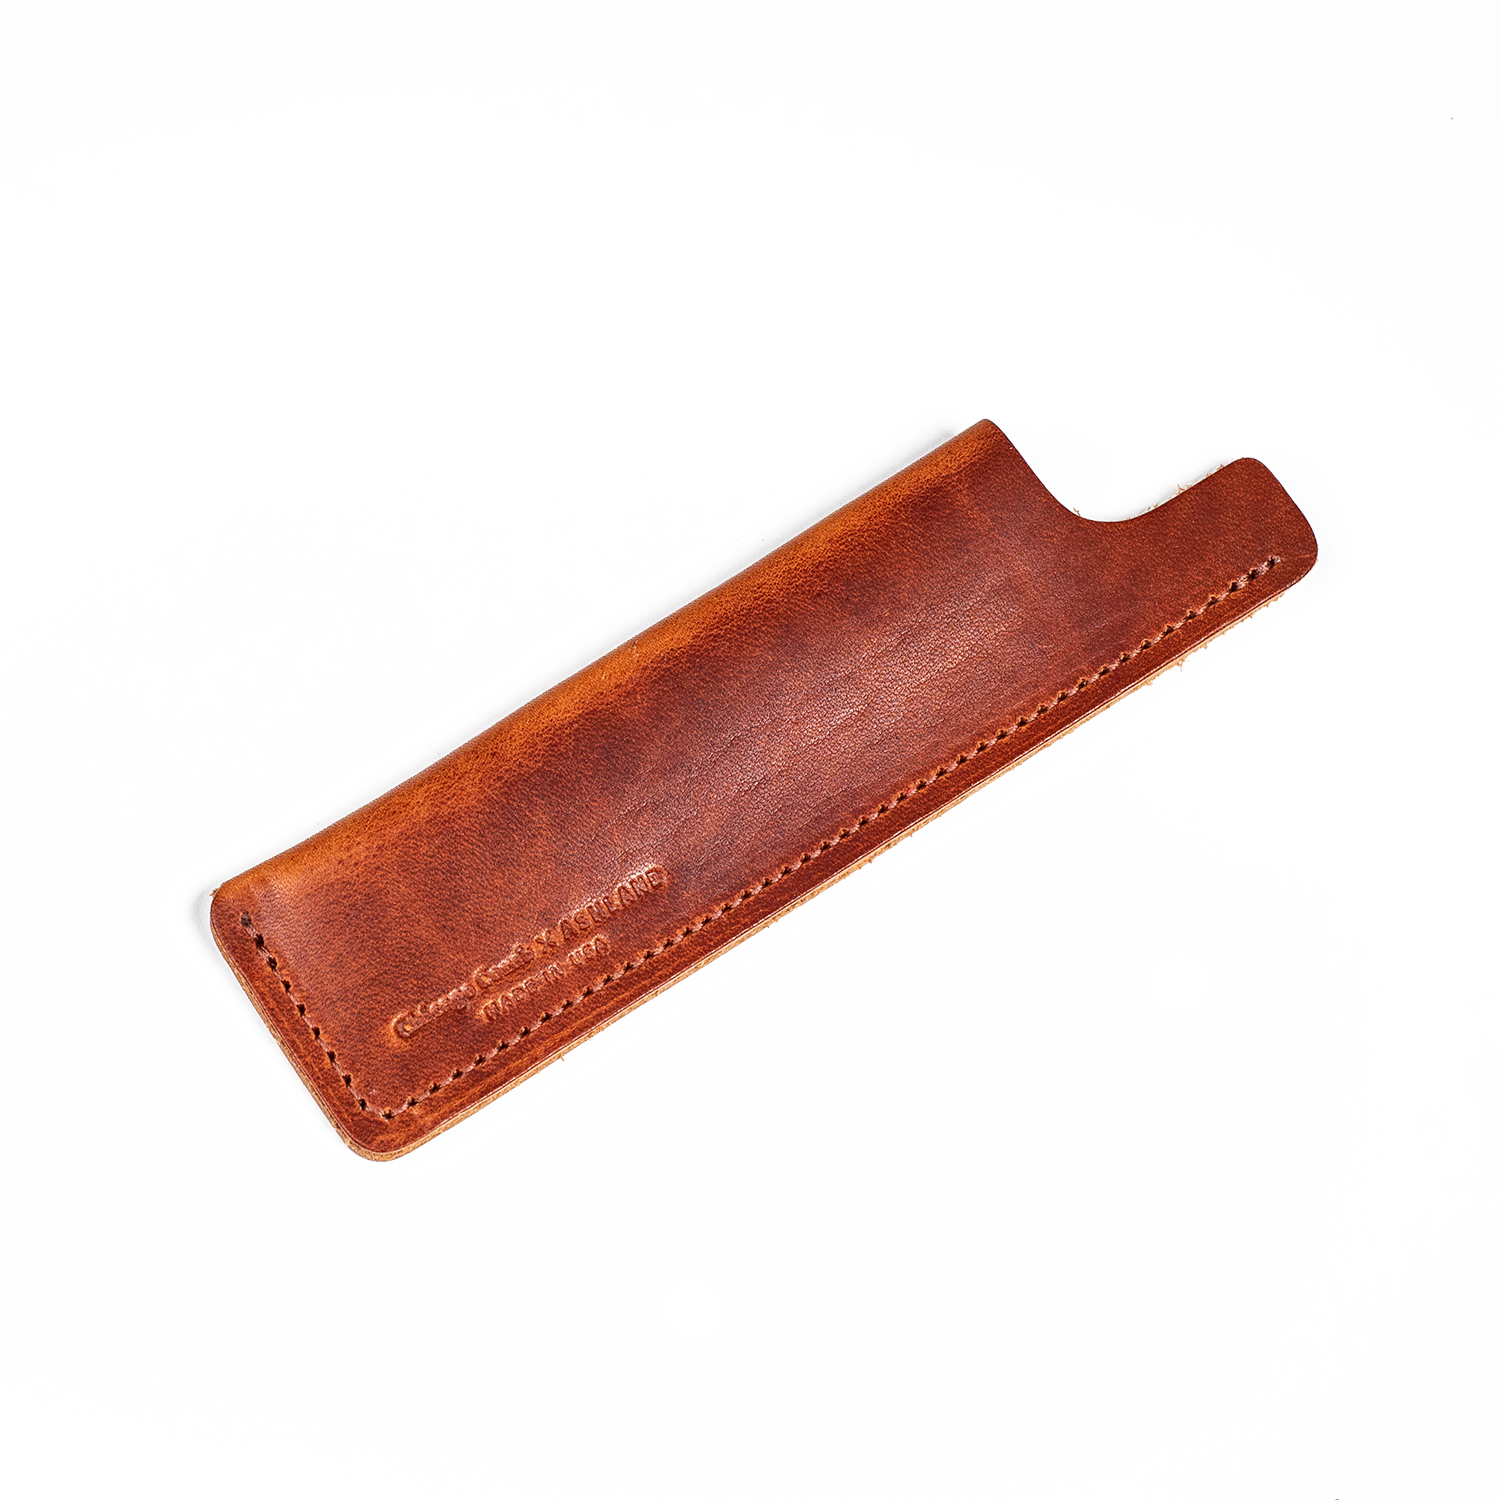 ashland leather comb sheath